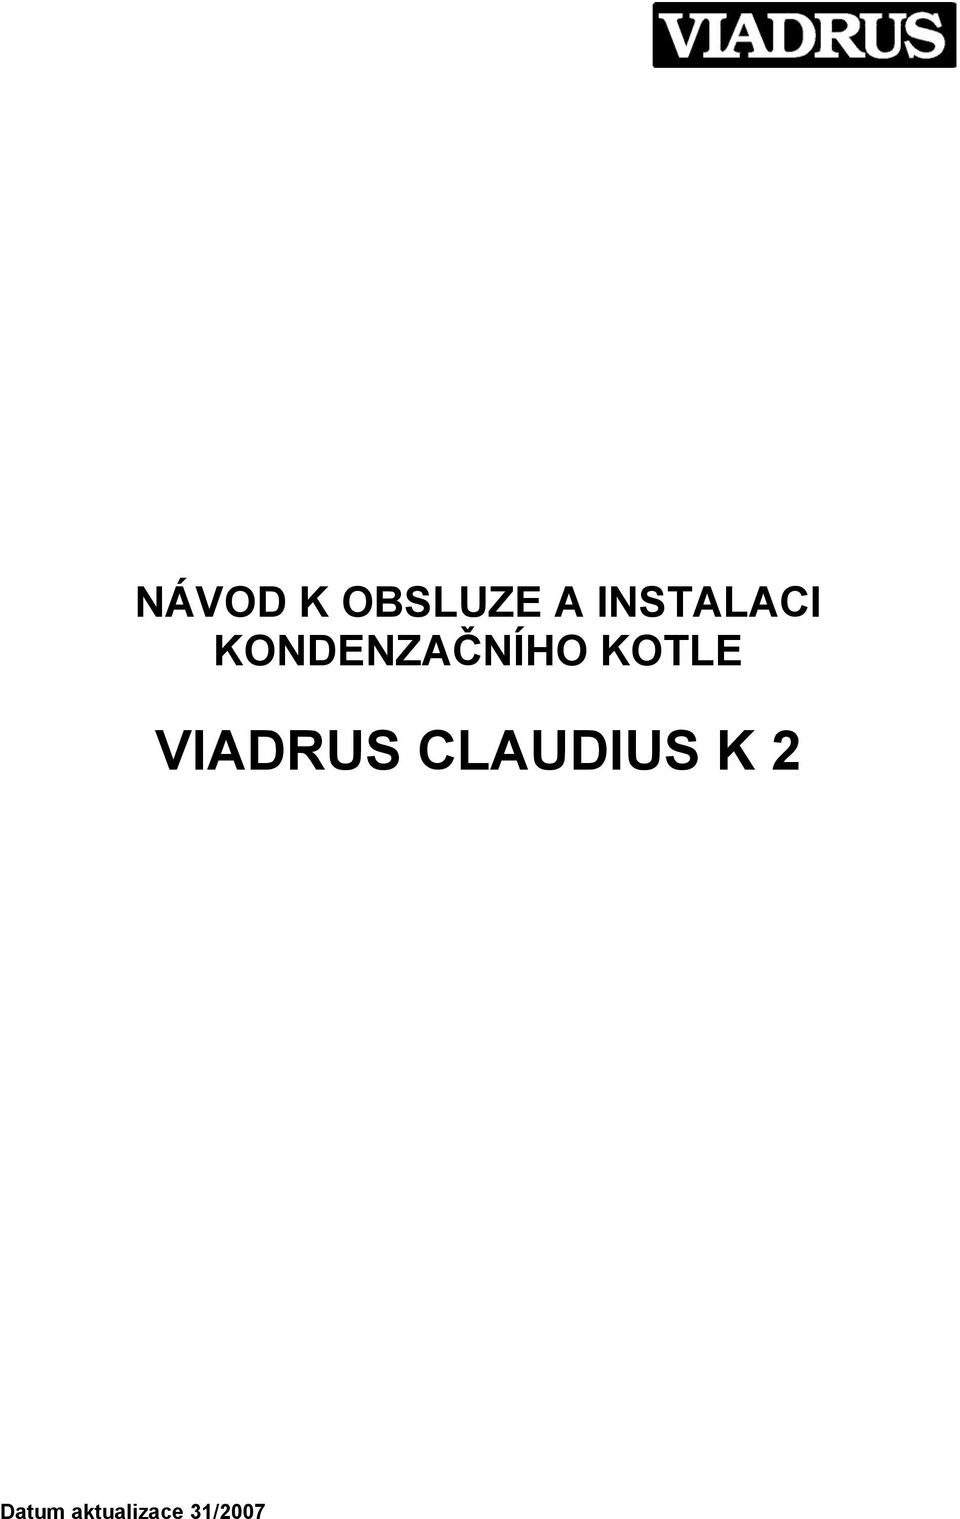 KOTLE VIADRUS CLAUDIUS